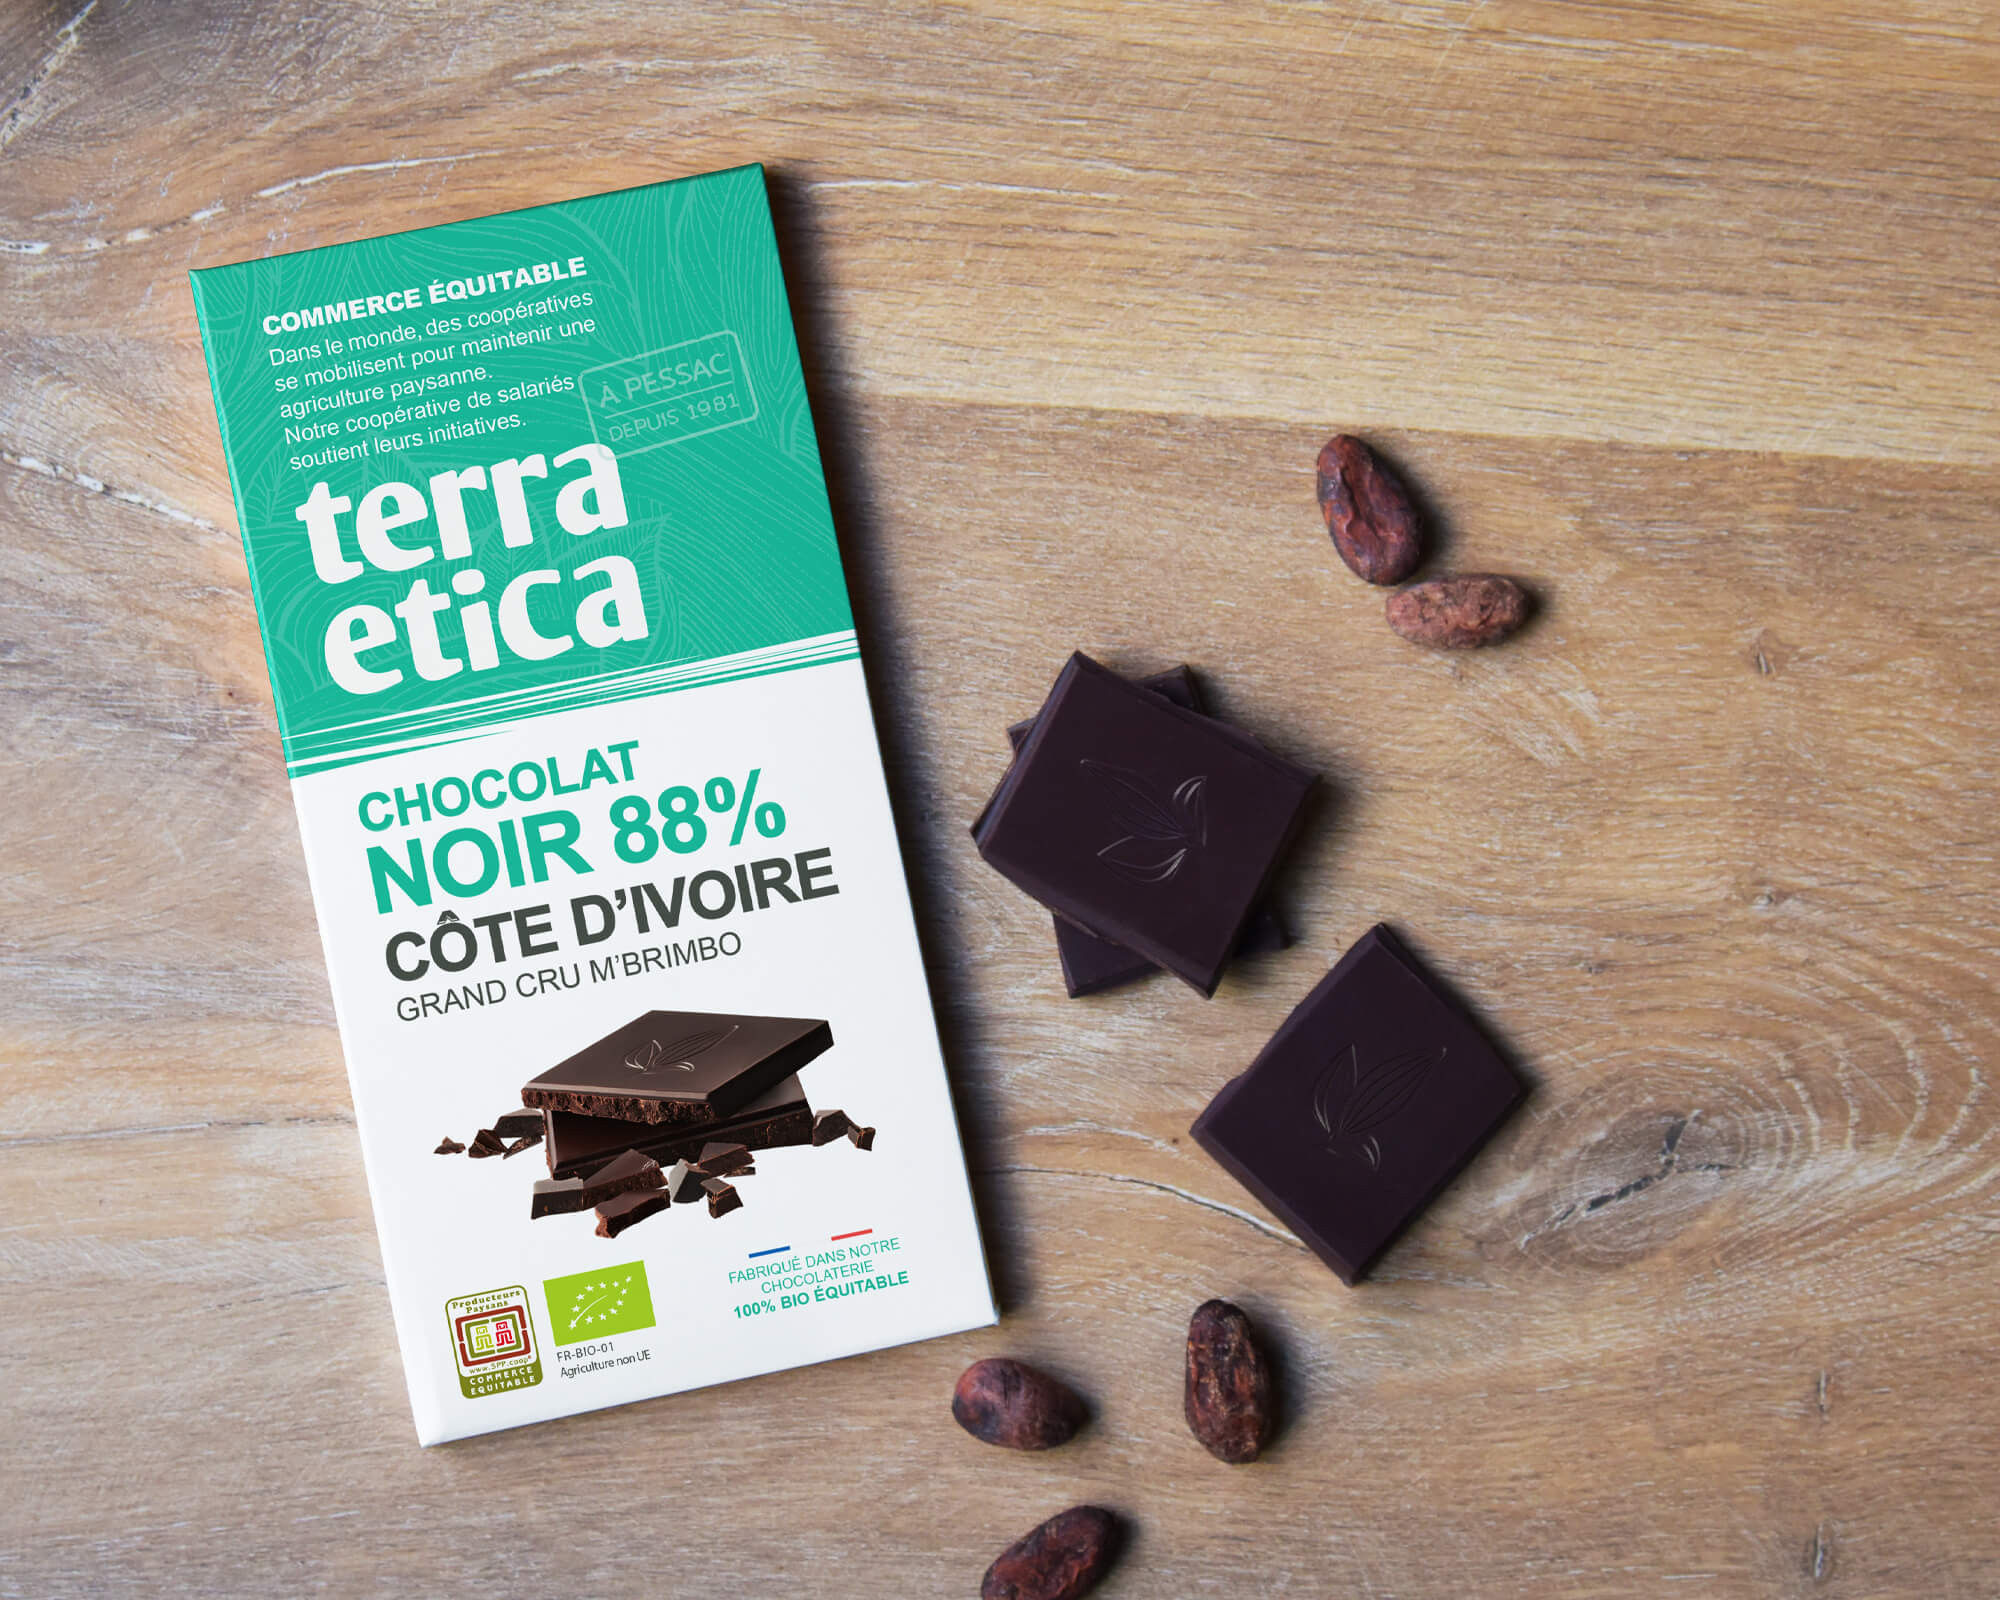 Chocolat Noir bio et équitable 74% cacao Côte d'Ivoire I Terra Etica